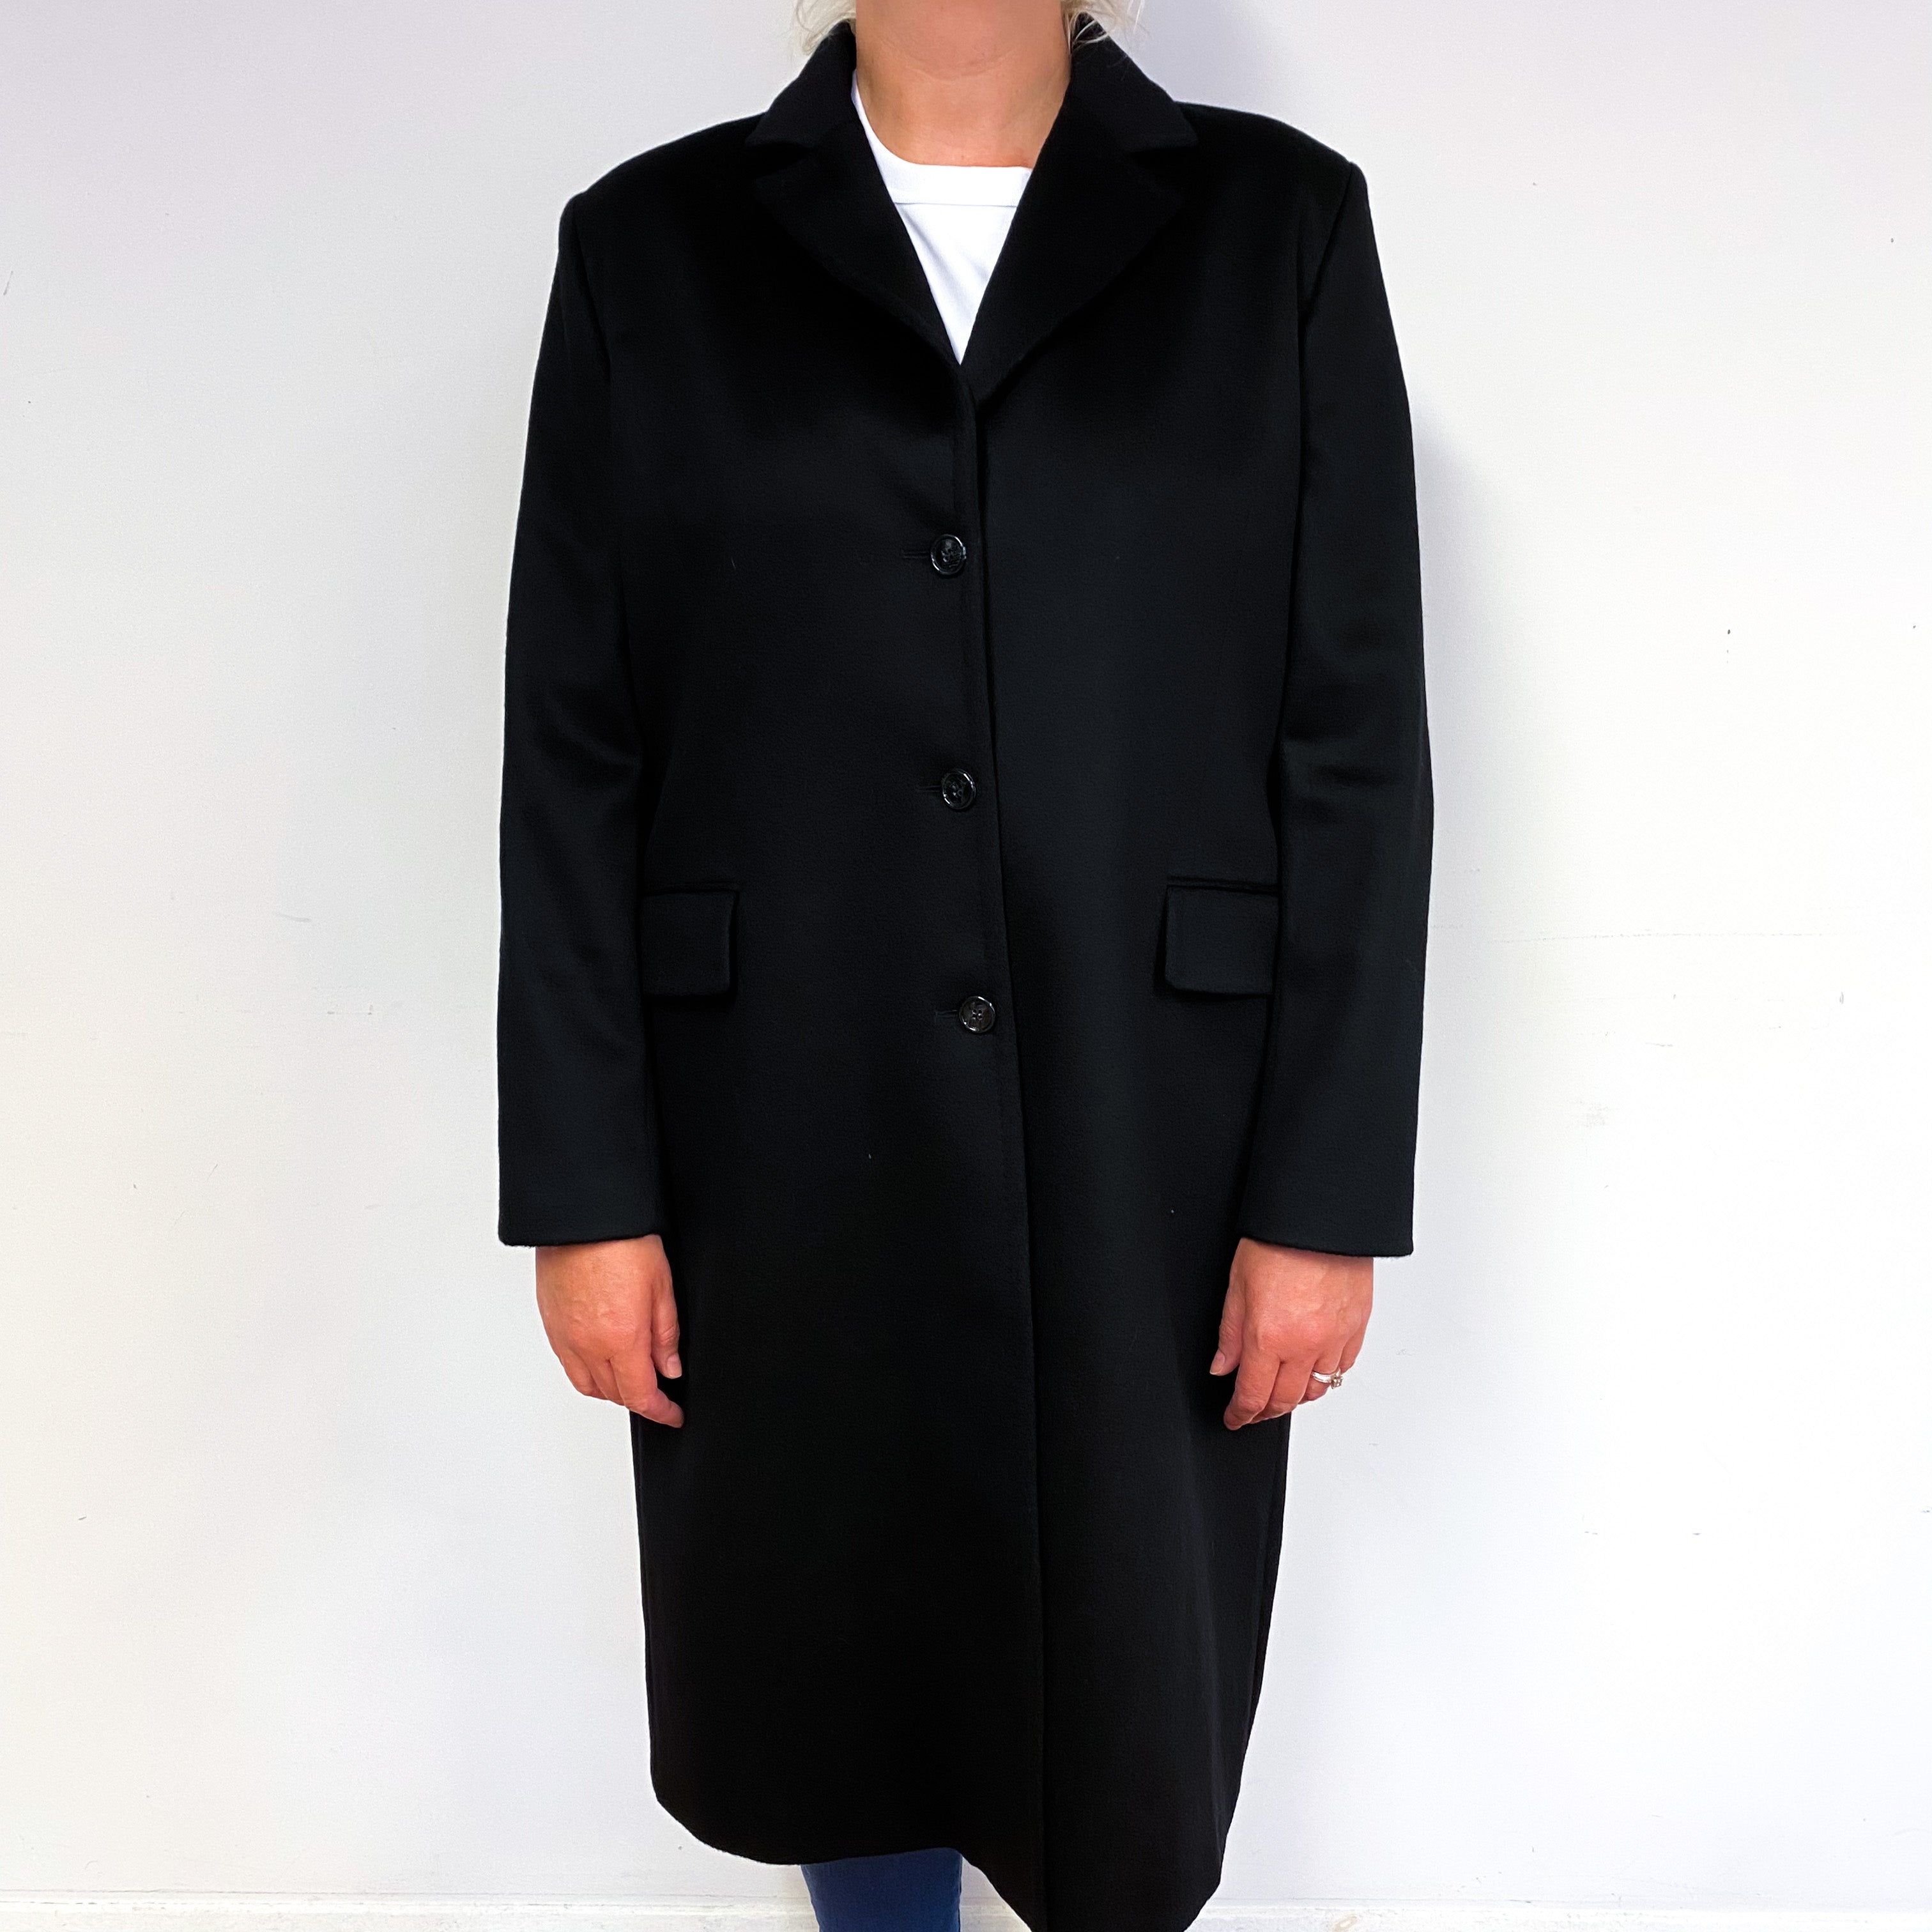 Black Cashmere Lined Coat UK Size 18 Large